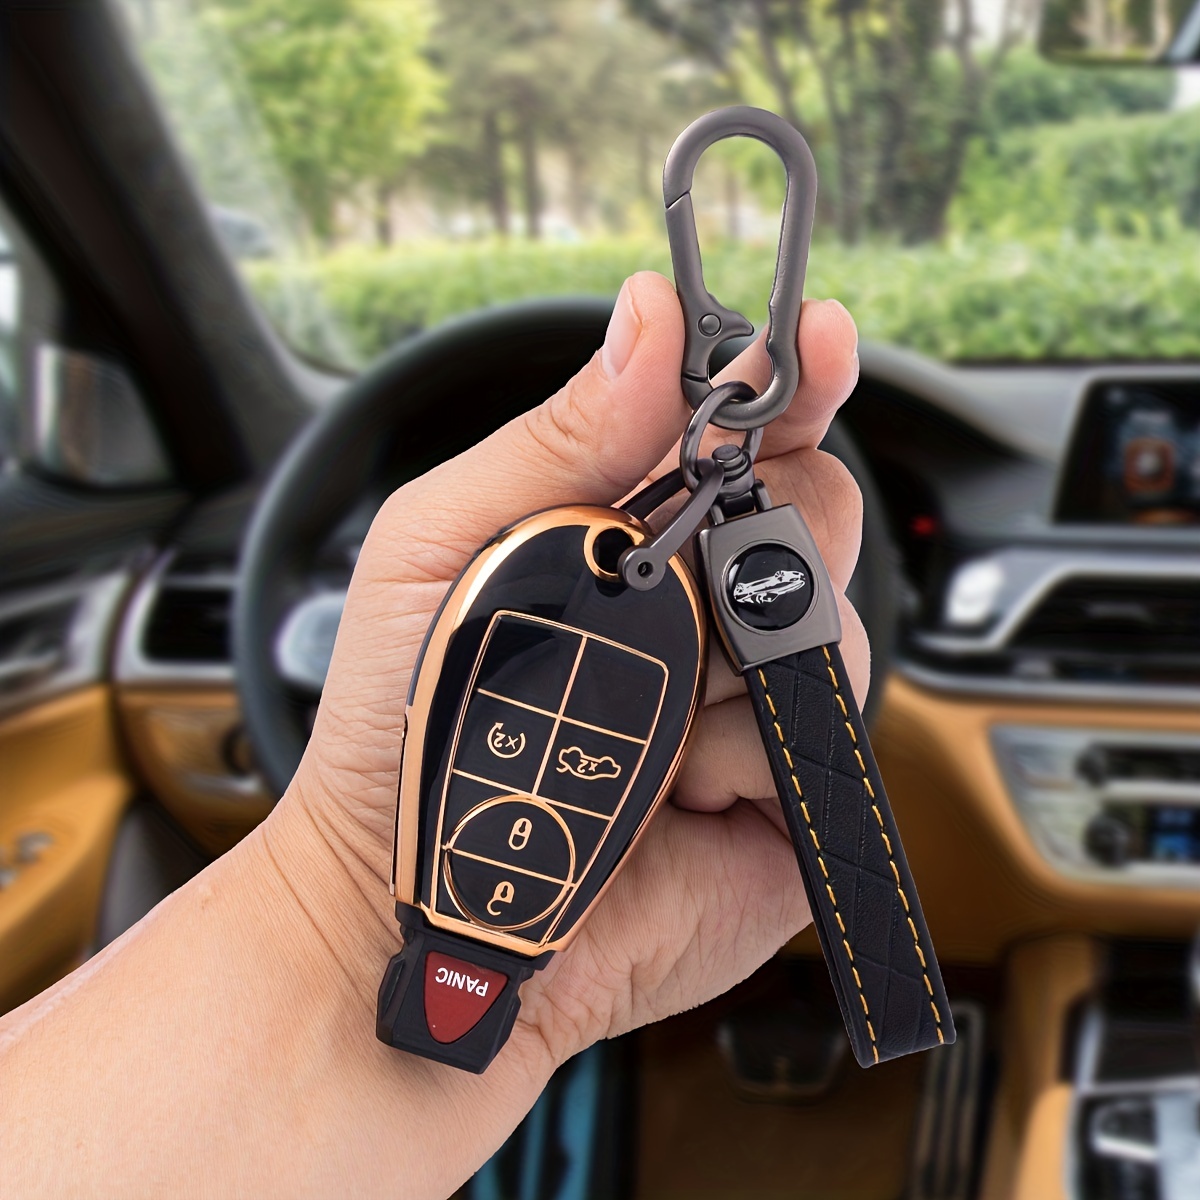 1set Rhinestone Decor Keychain & Car Key Case & Screwdriver